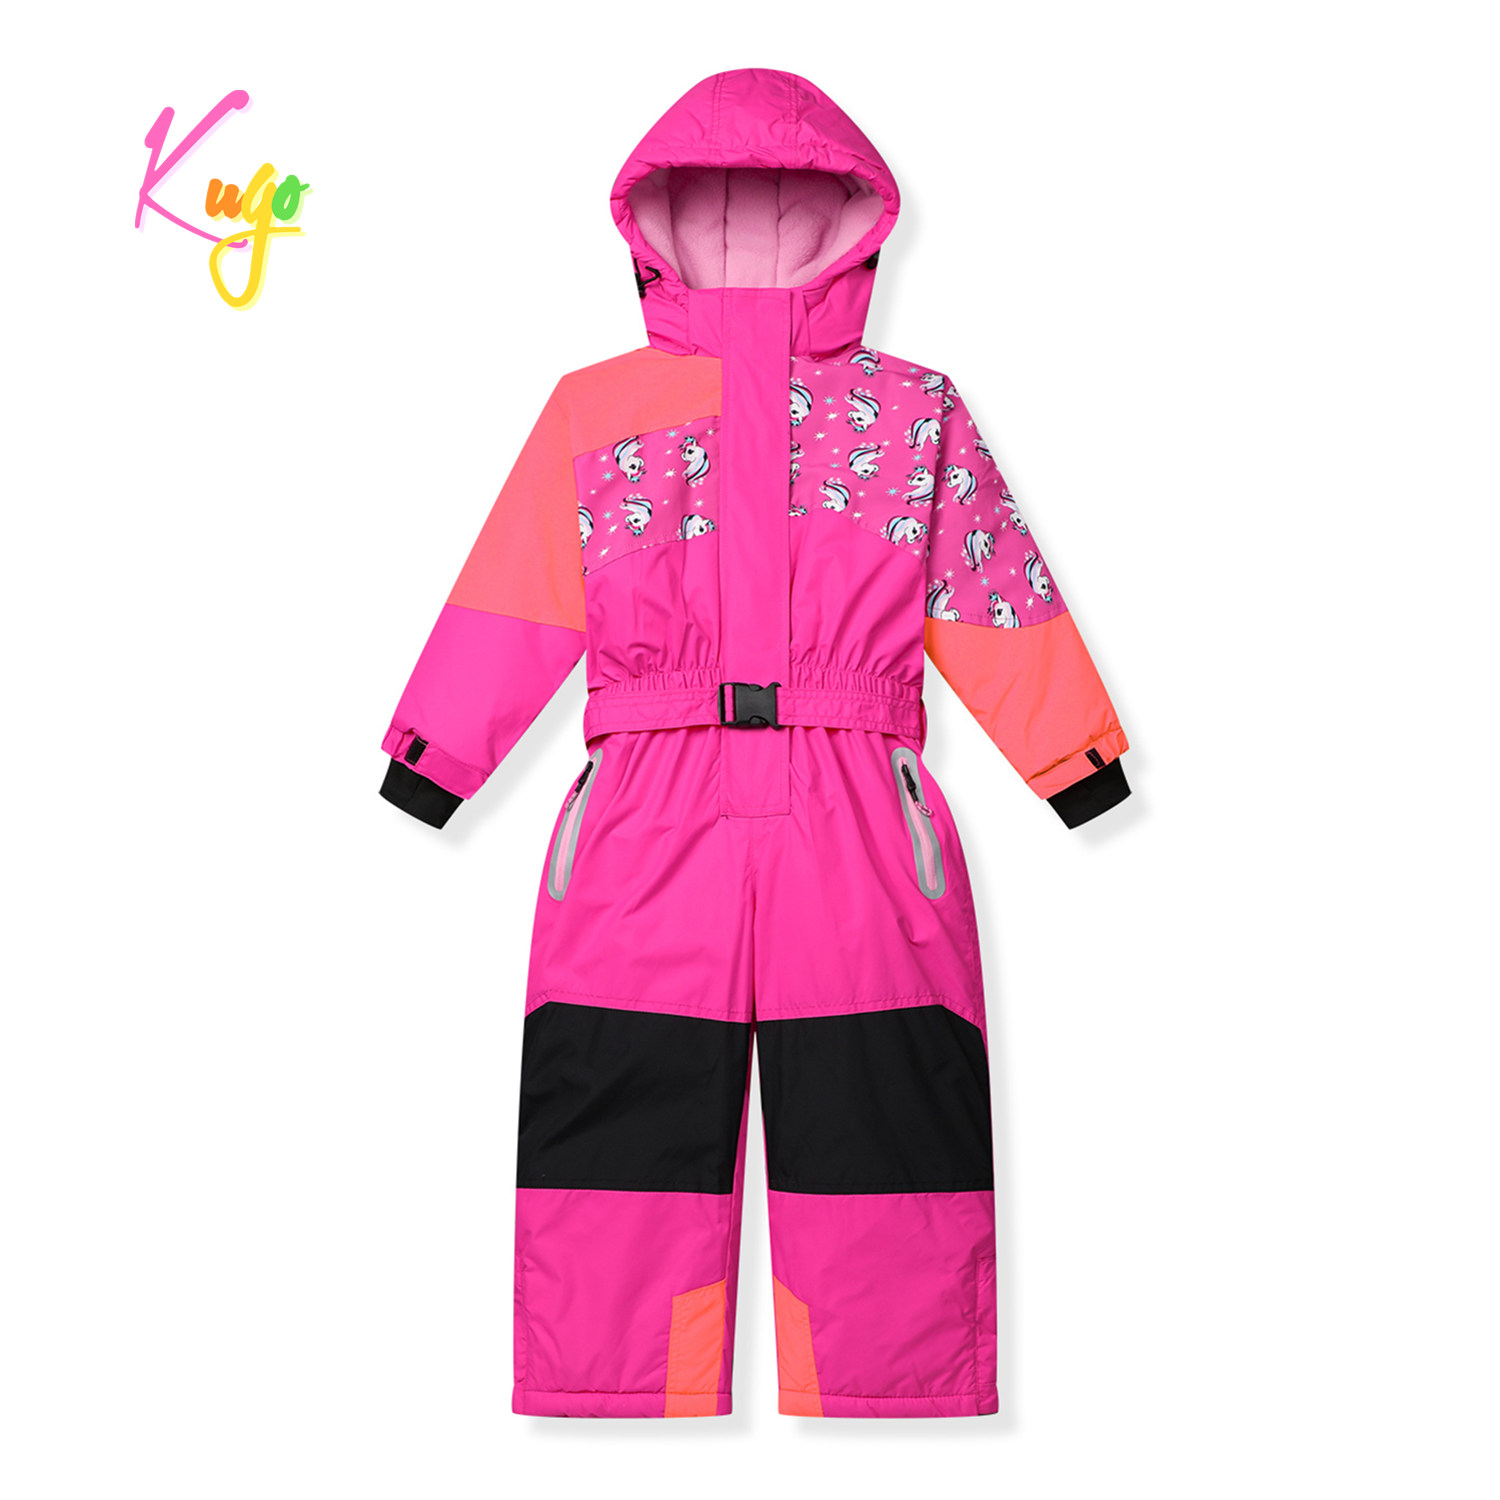 Dívčí zimní kombinéza - KUGO PB9910, růžová Barva: Růžová, Velikost: 86